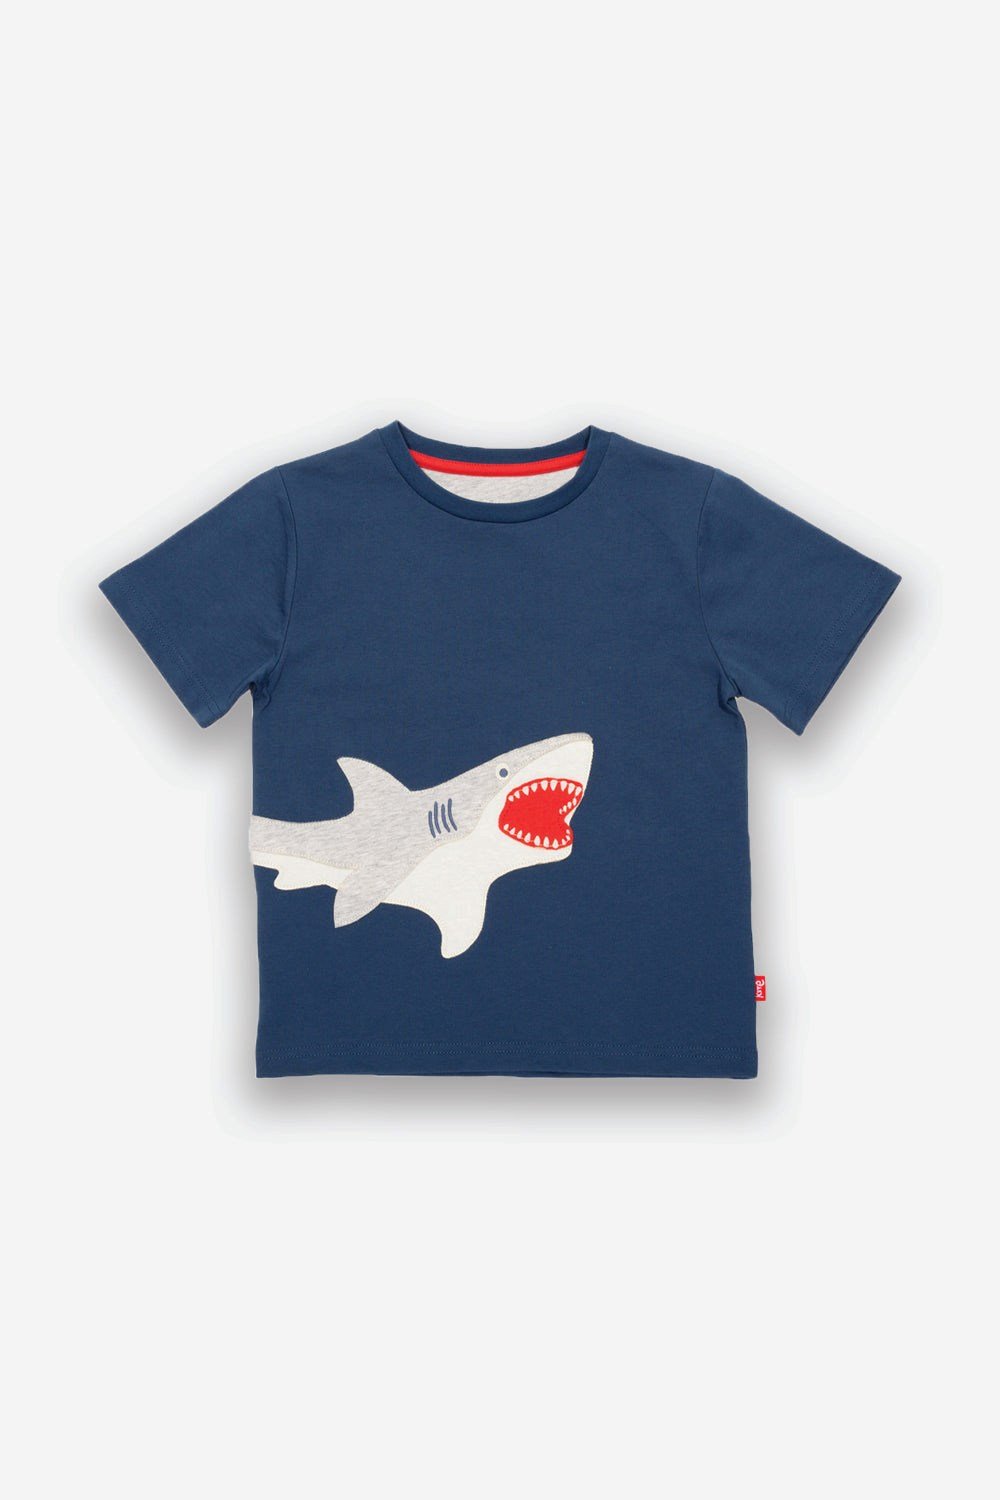 Shark Kids Organic Cotton T-Shirt -